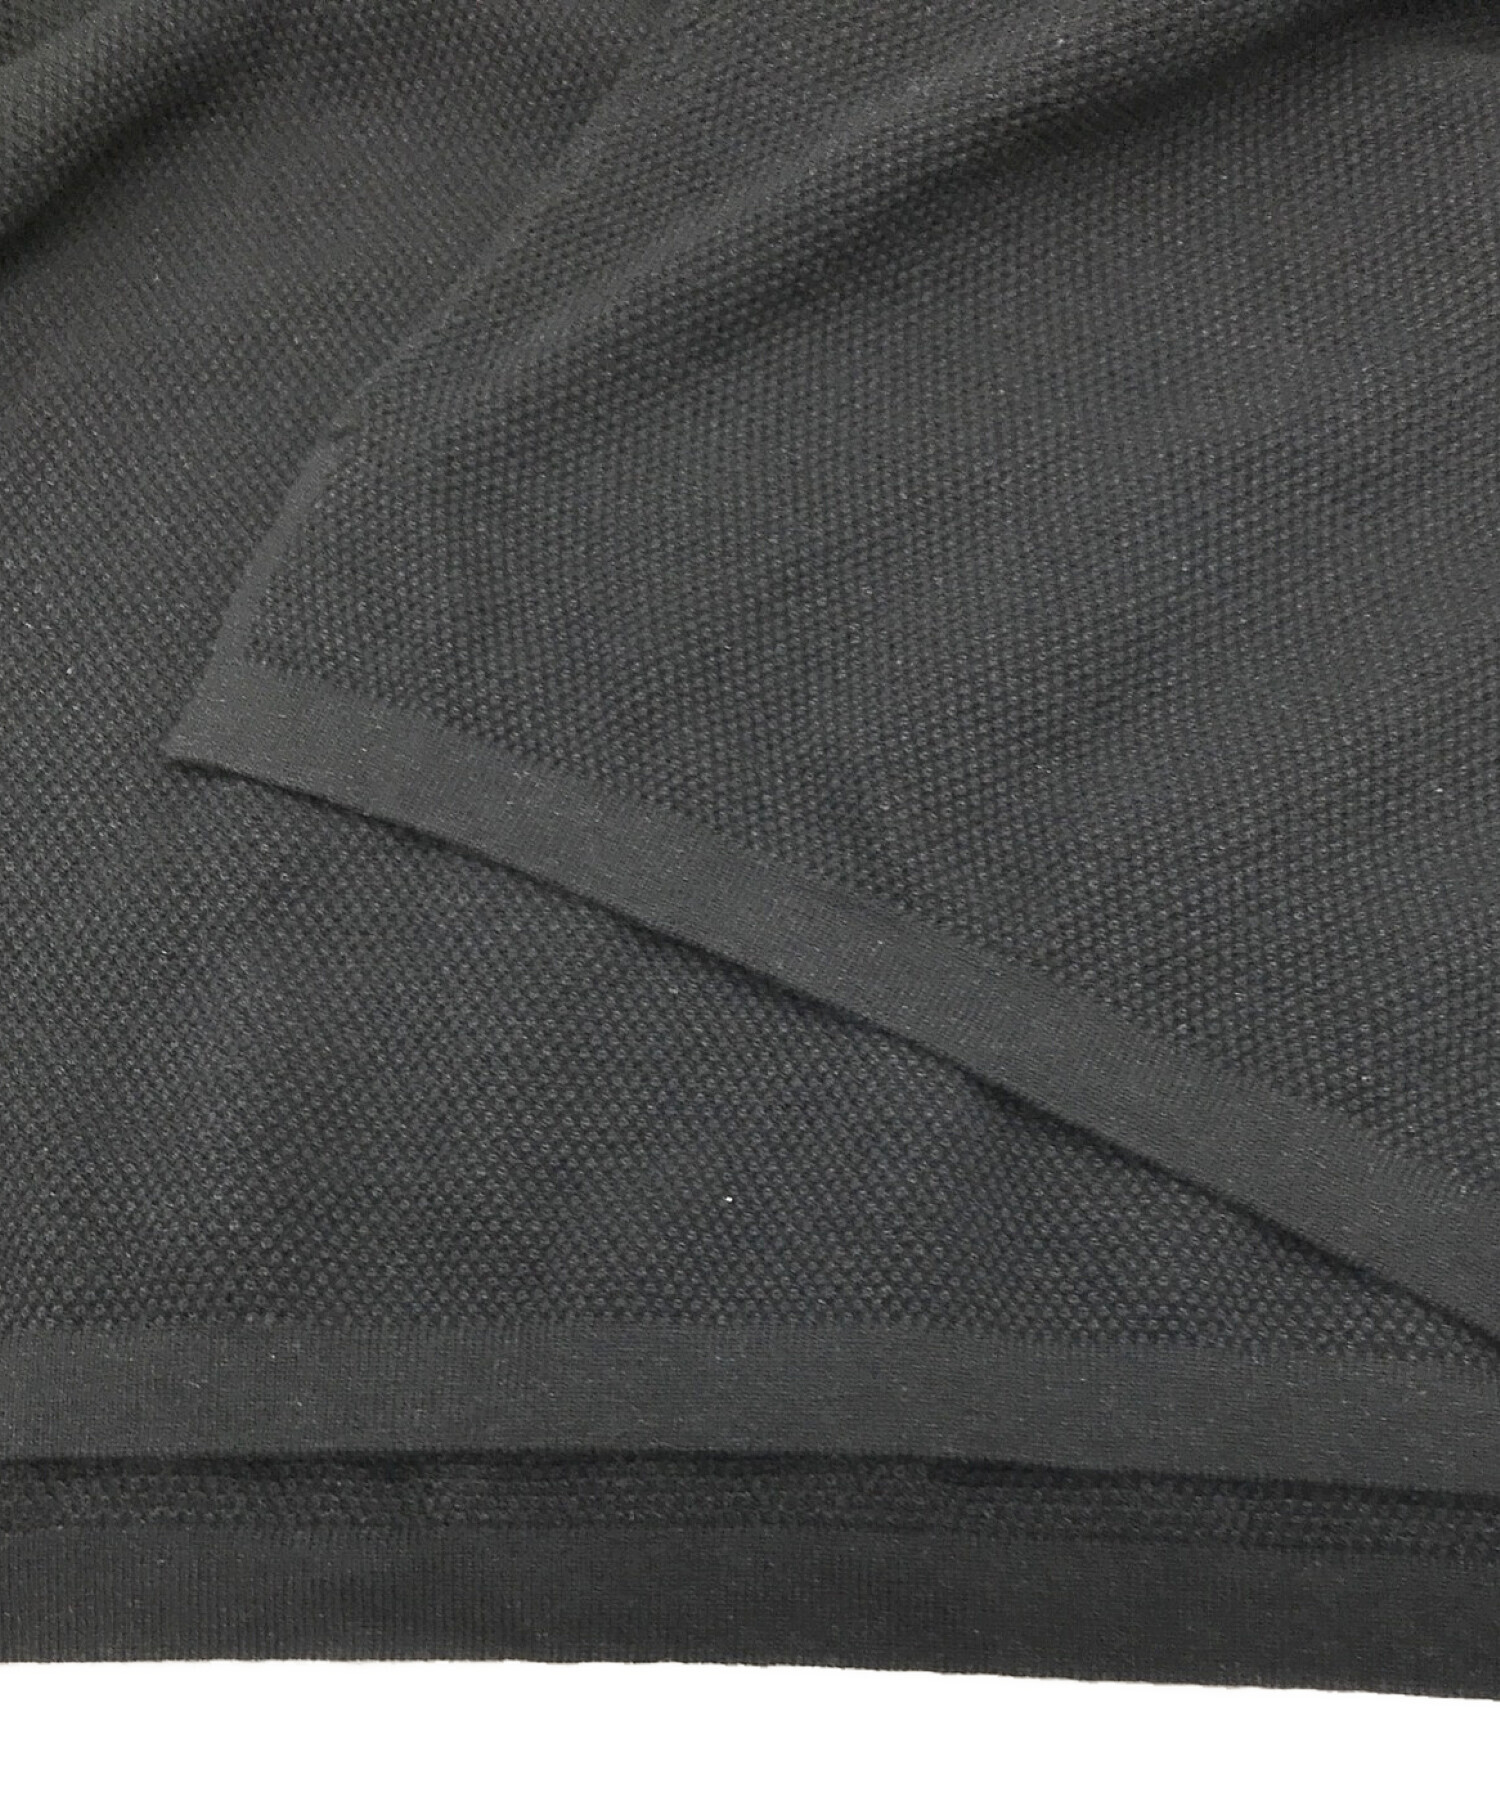 is-ness (イズネス) KNITTED BIG POLO/ビッグシルエットポロシャツ ブラック サイズ:L